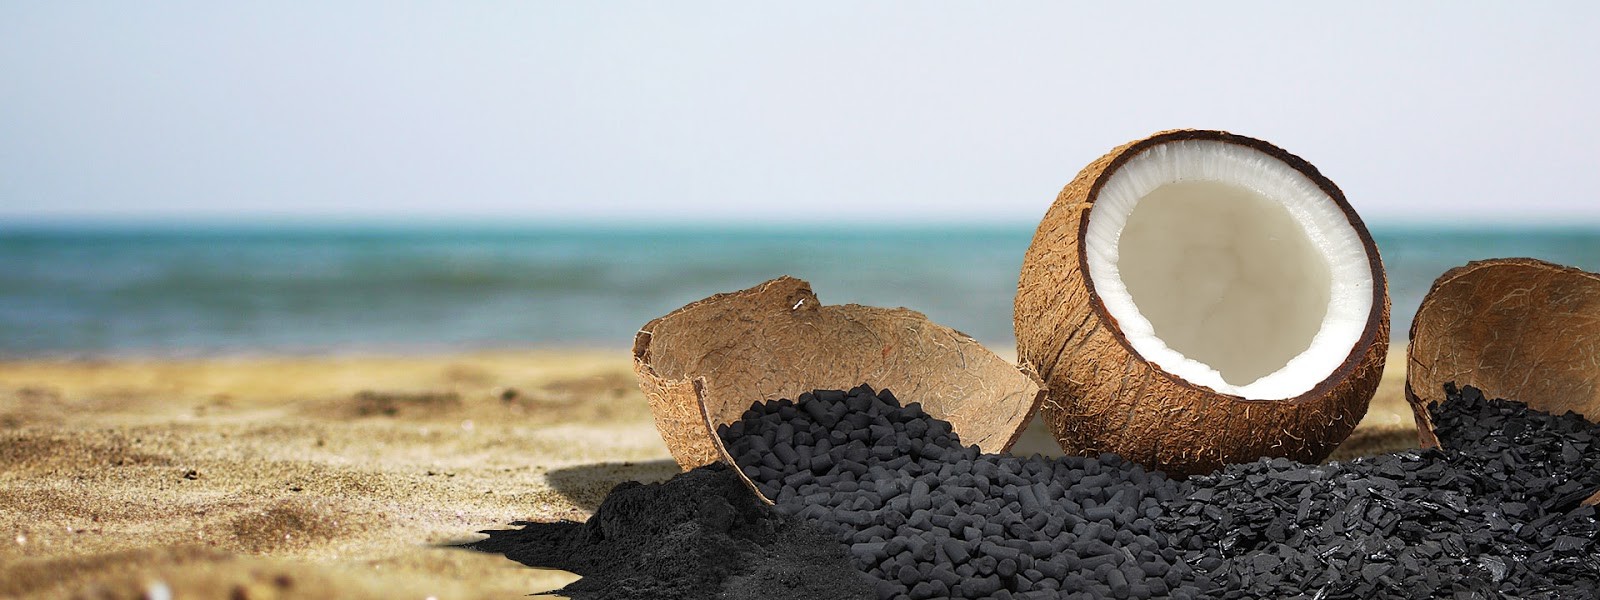 Gáo dừa là nguyên liệu chính để sản xuất than hoạt tính ở nước ta